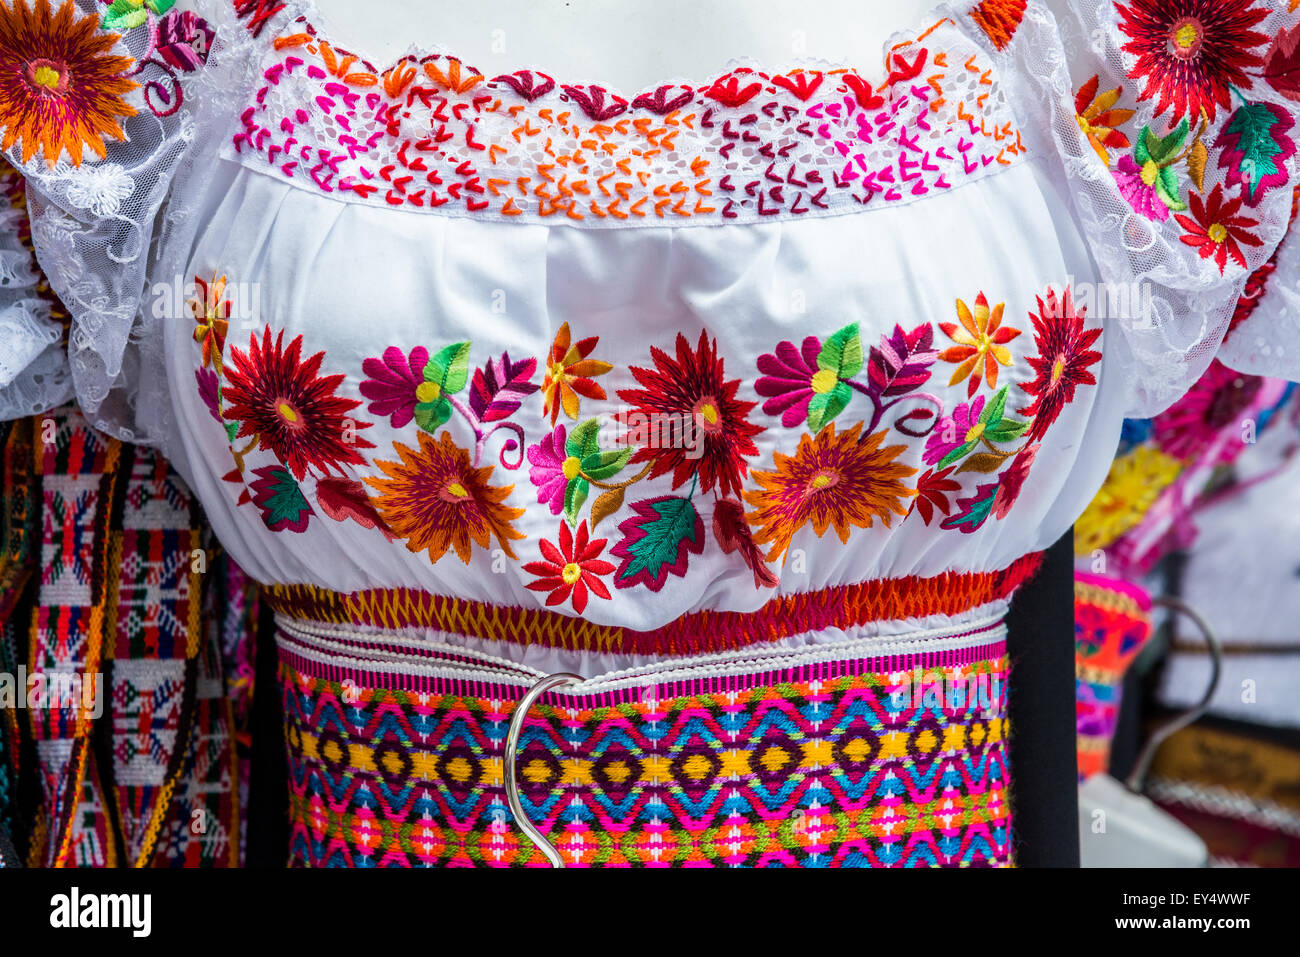 Bunt verwickelt Dame Kleid des traditionellen Anden-Stil. Otavalo, Ecuador. Stockfoto